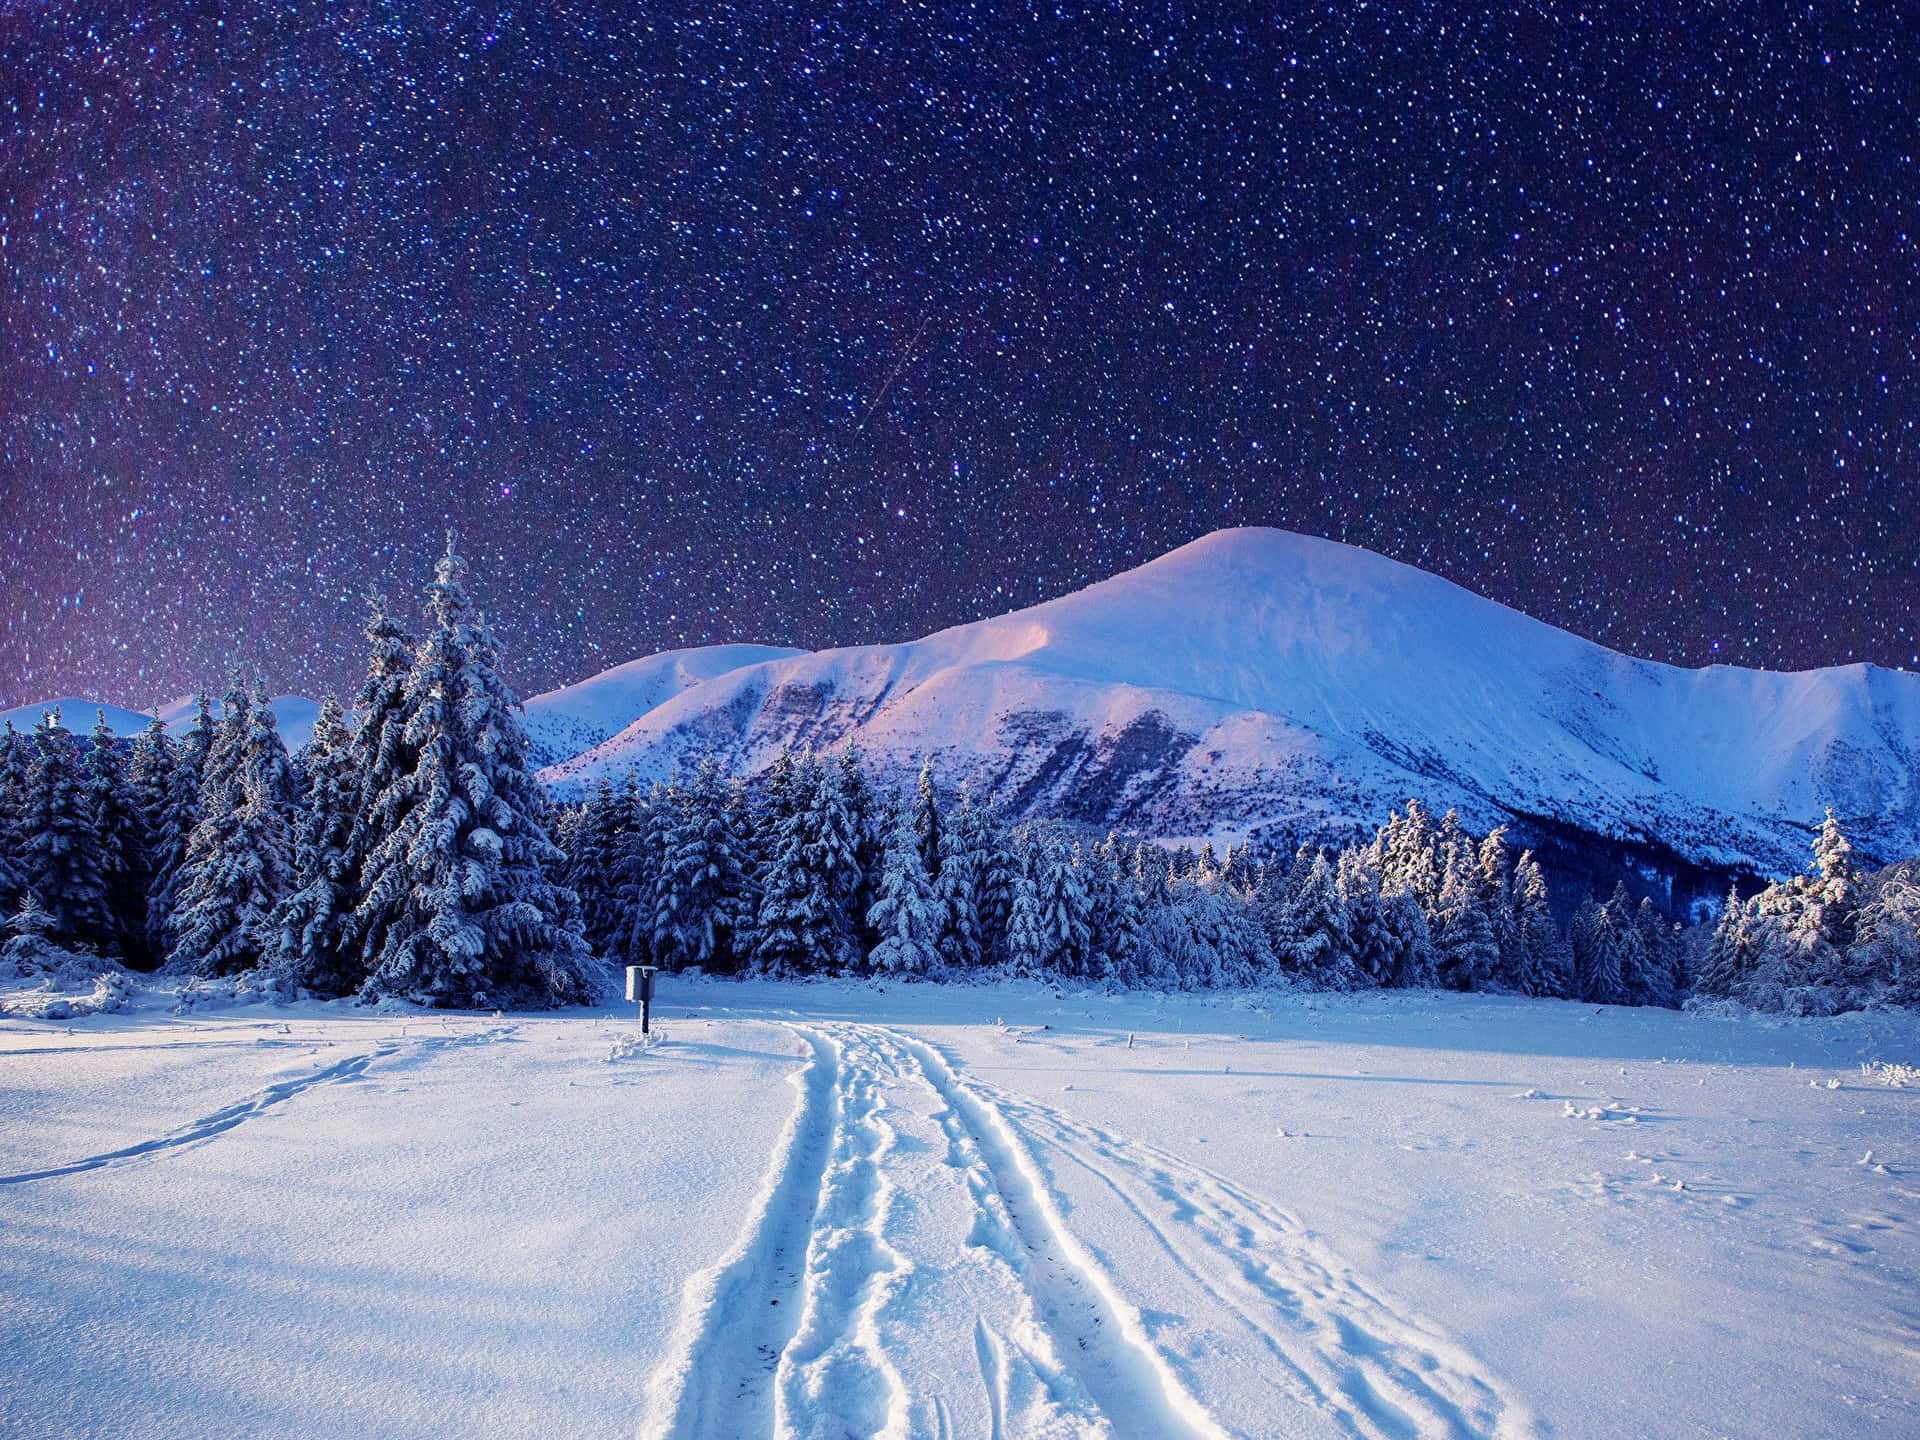 Fondode Pantalla De Noche Invernal Con Huellas En La Nieve De Escritorio. Fondo de pantalla